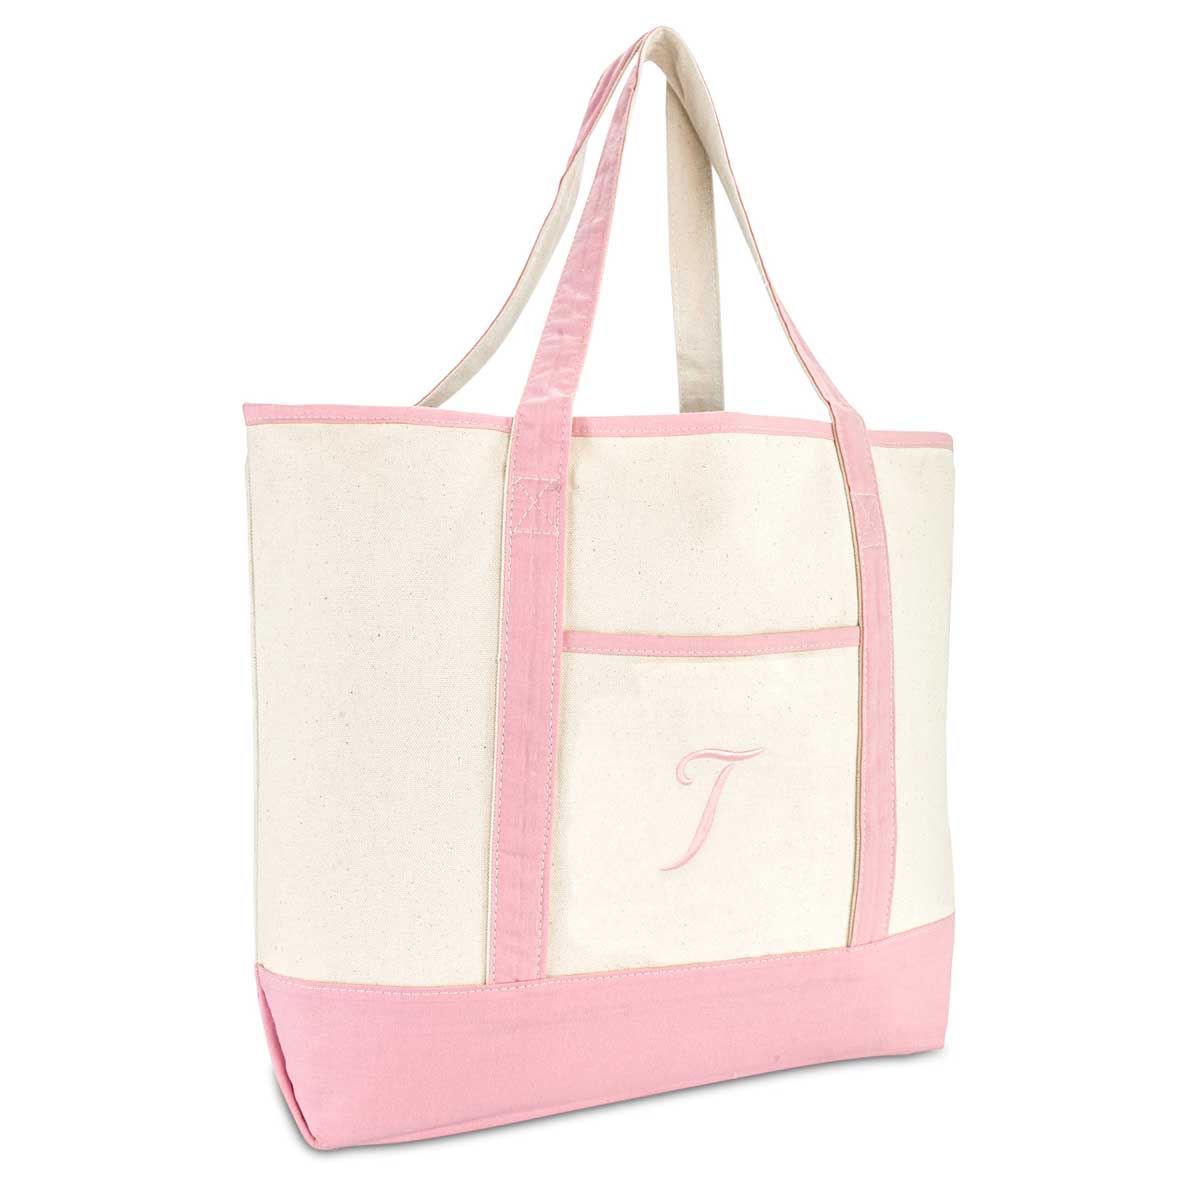 Dalix Women's Cotton Canvas Tote Bag Large Shoulder Bags Pink Monogram A-Z